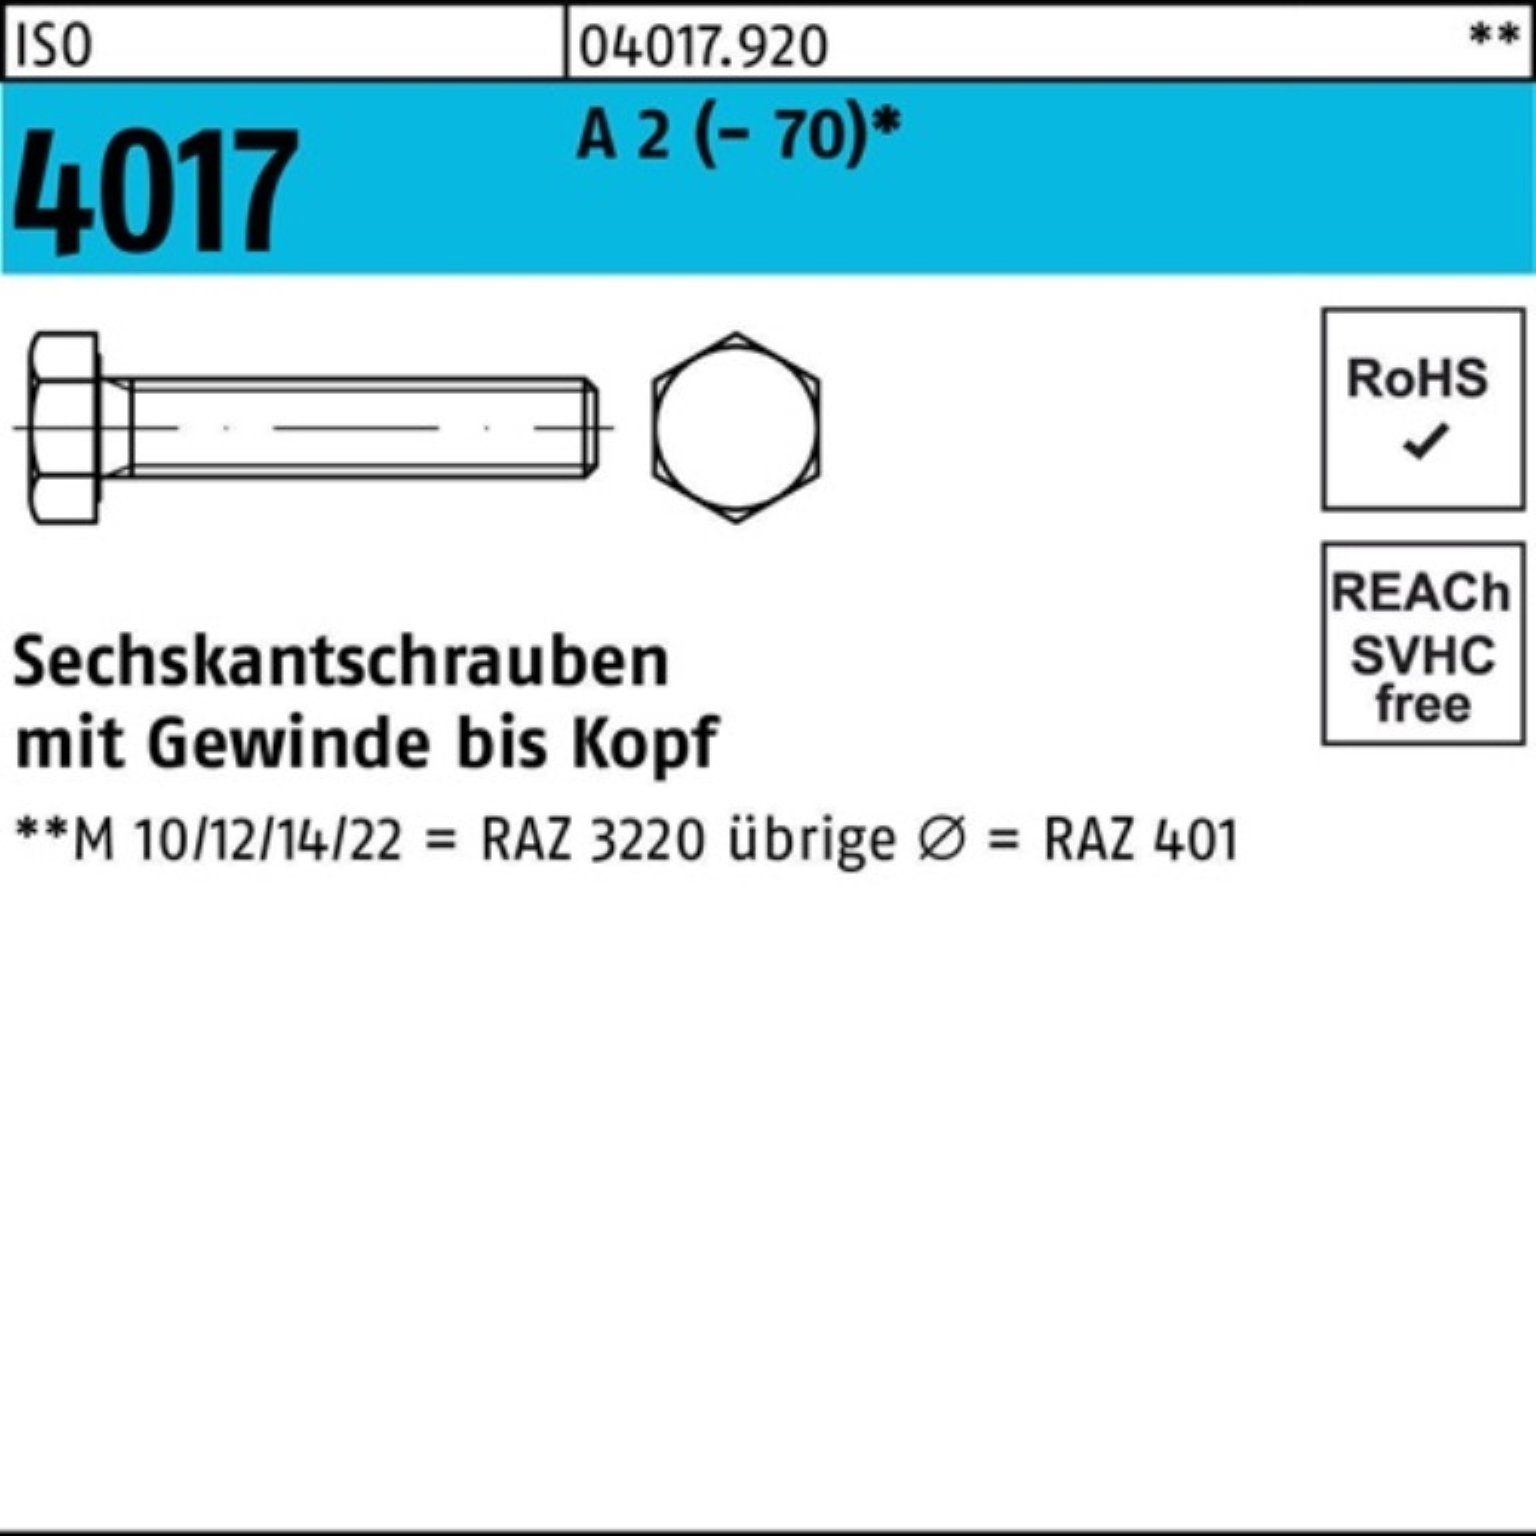 Bufab Sechskantschraube 100er Pack Sechskantschraube ISO 4017 VG M20x 75 A 2 (70) 25 Stück